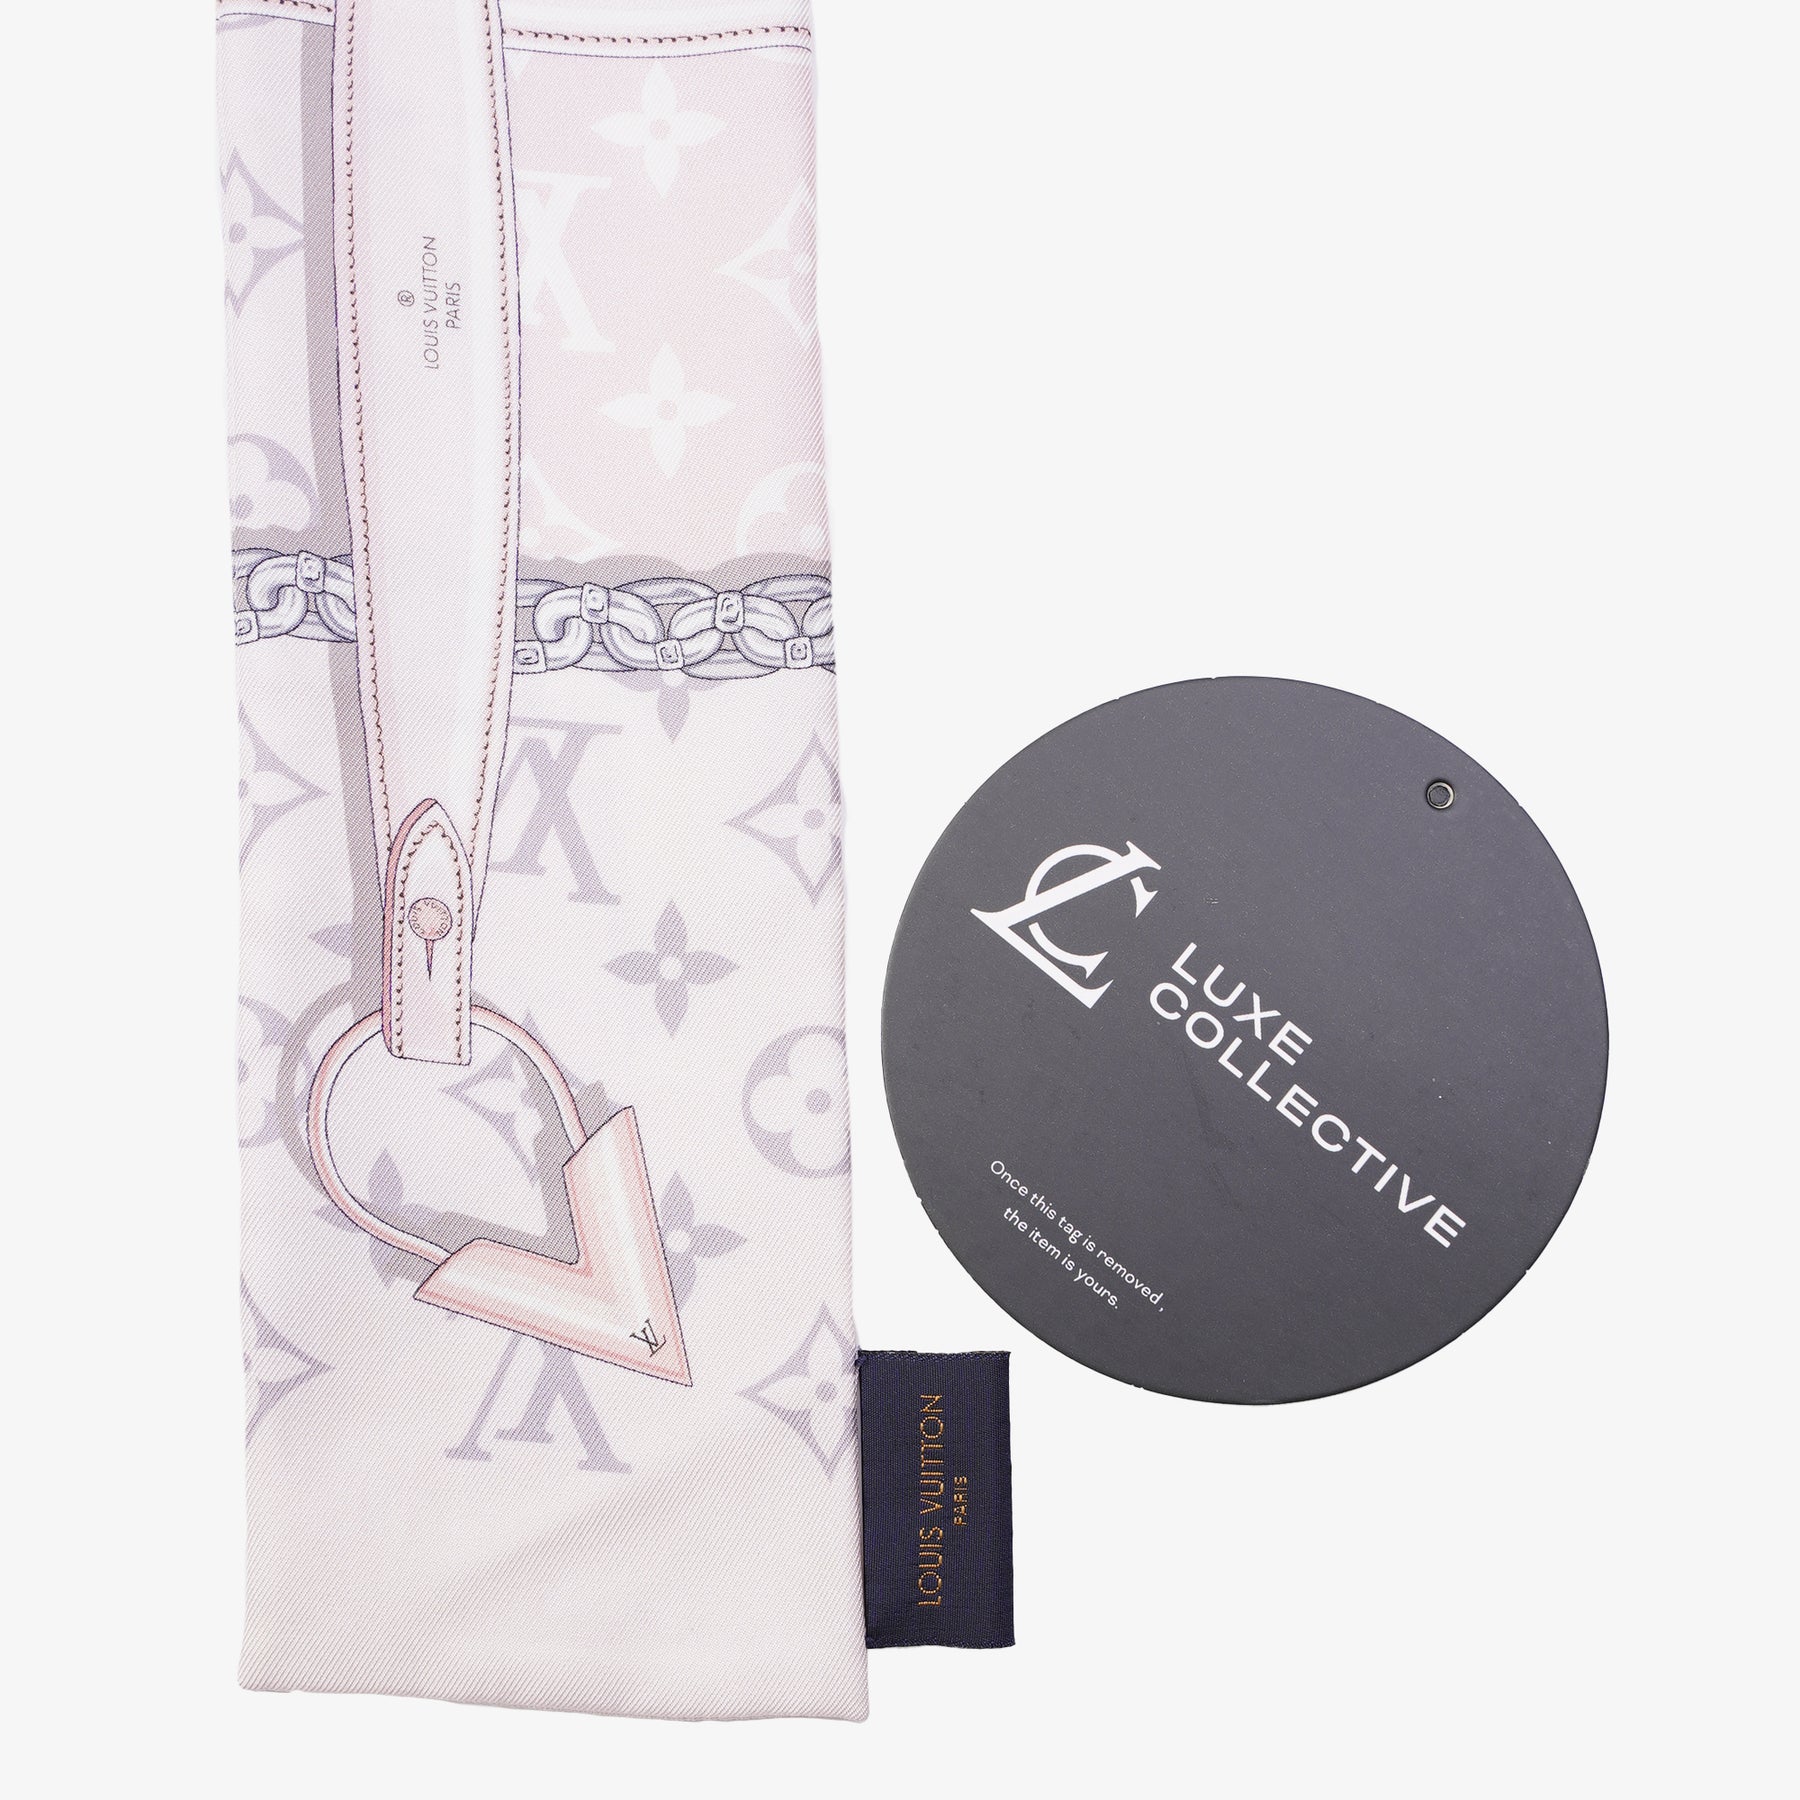 Louis Vuitton Monogram Confidential Silk Bandeau